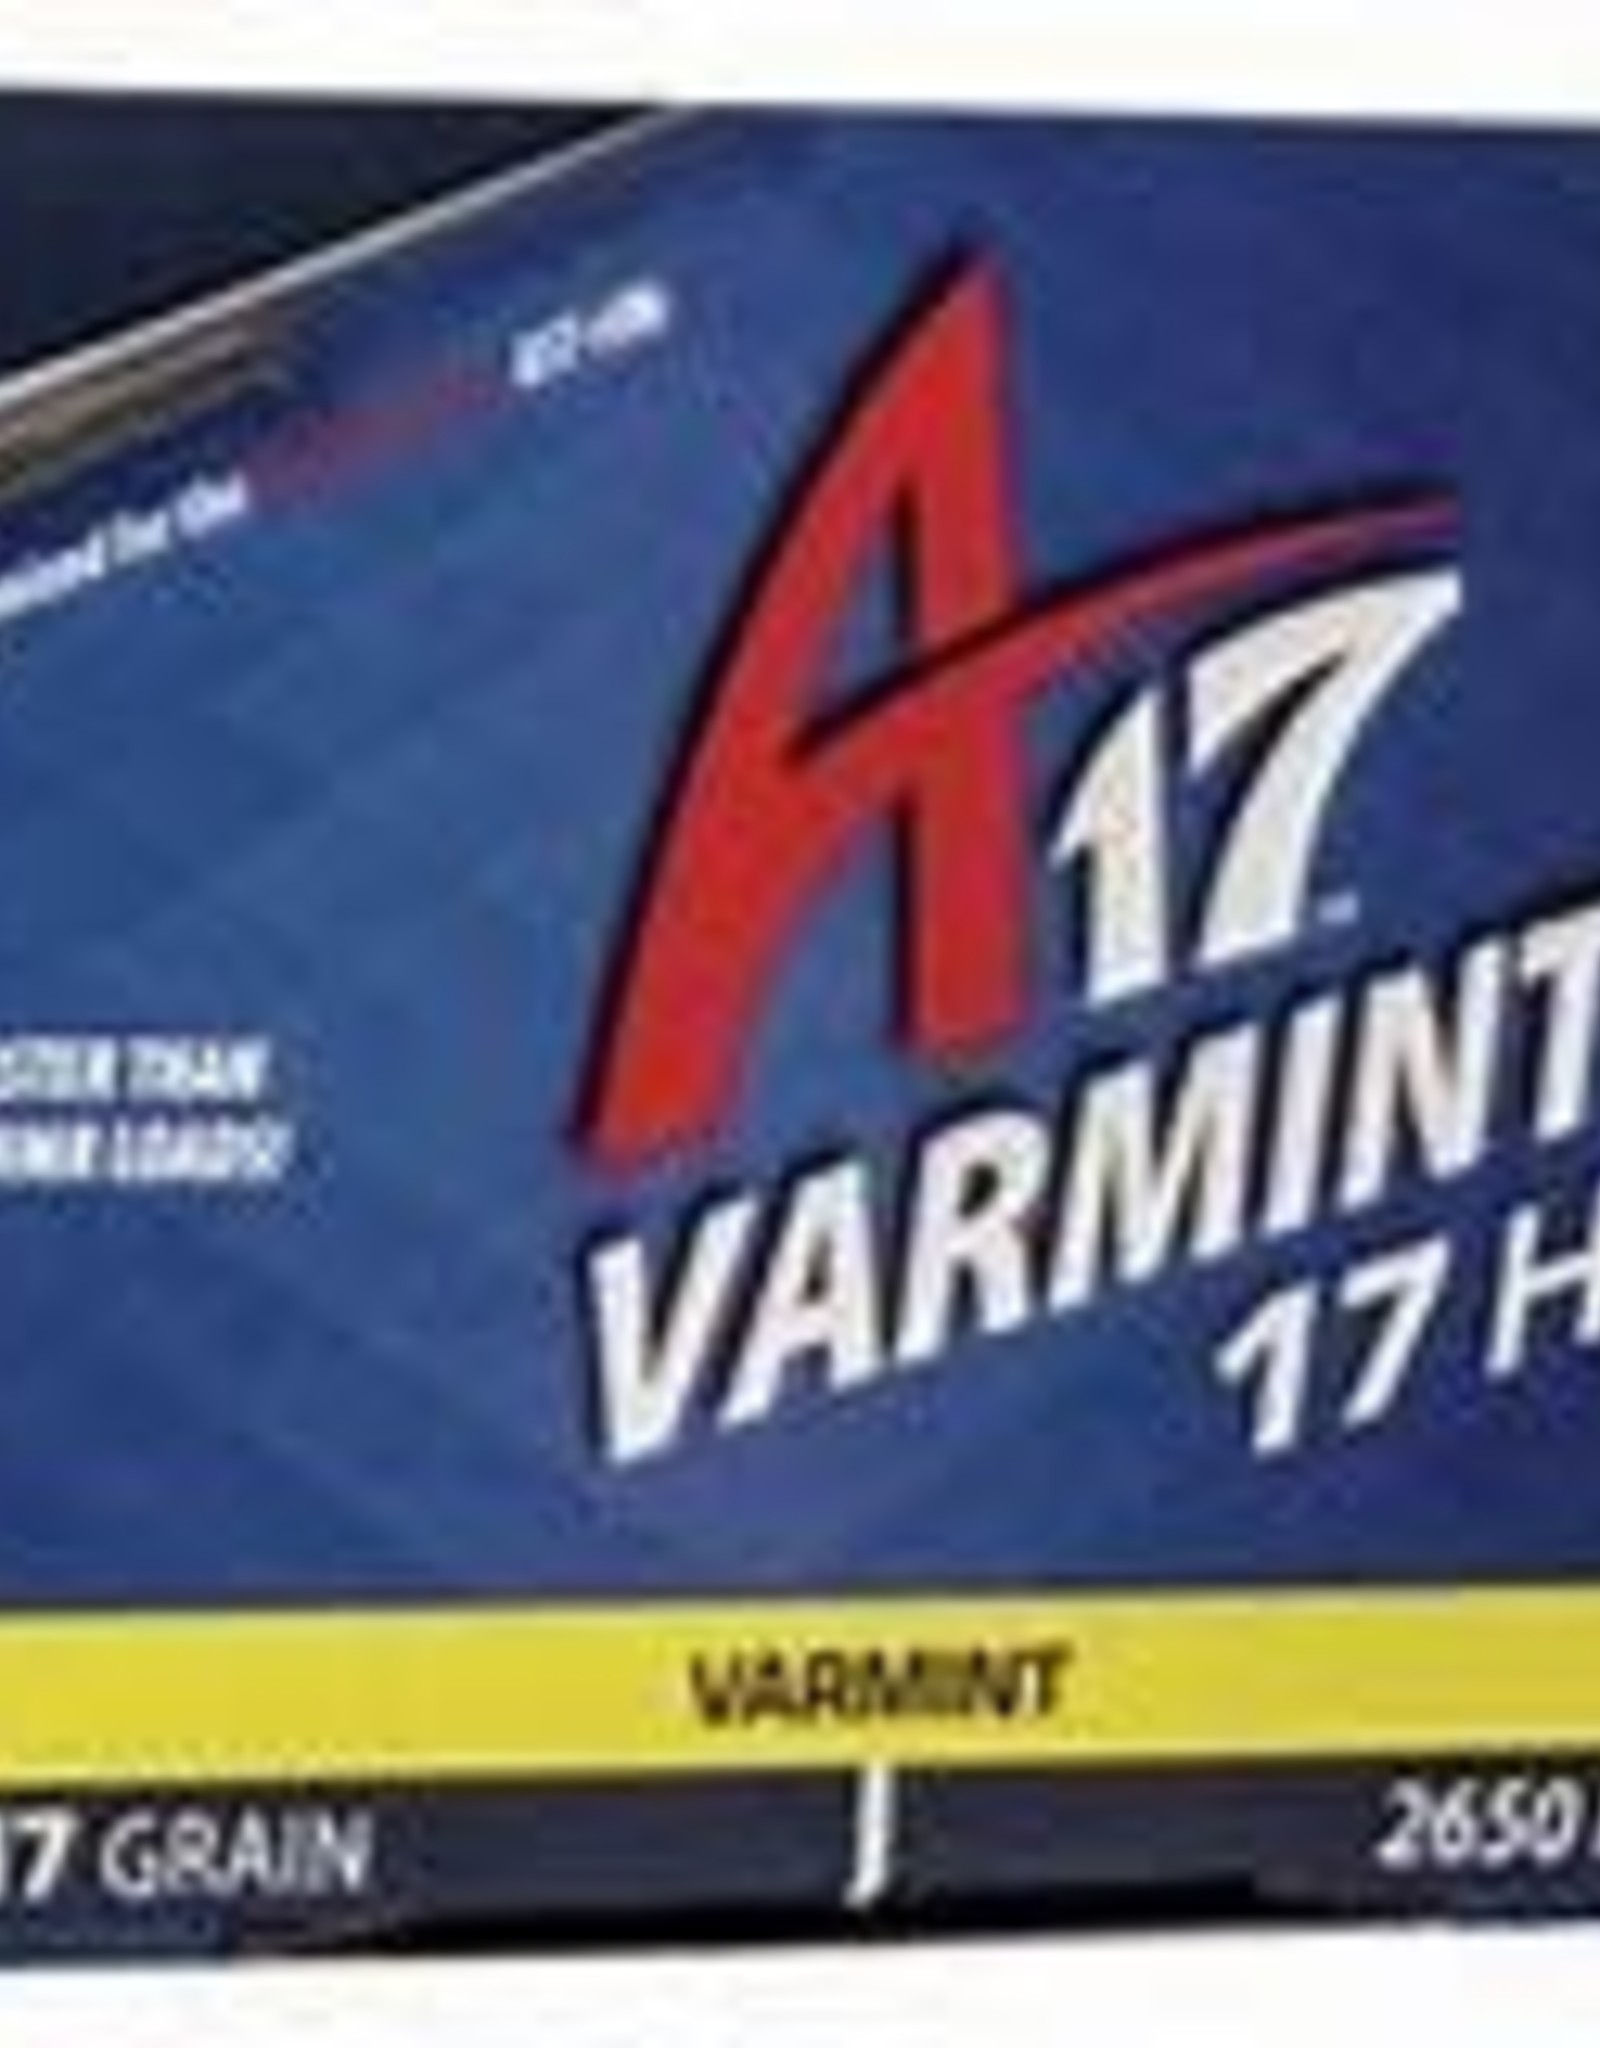 CCI A17 Varmint Tip 200 Rounds